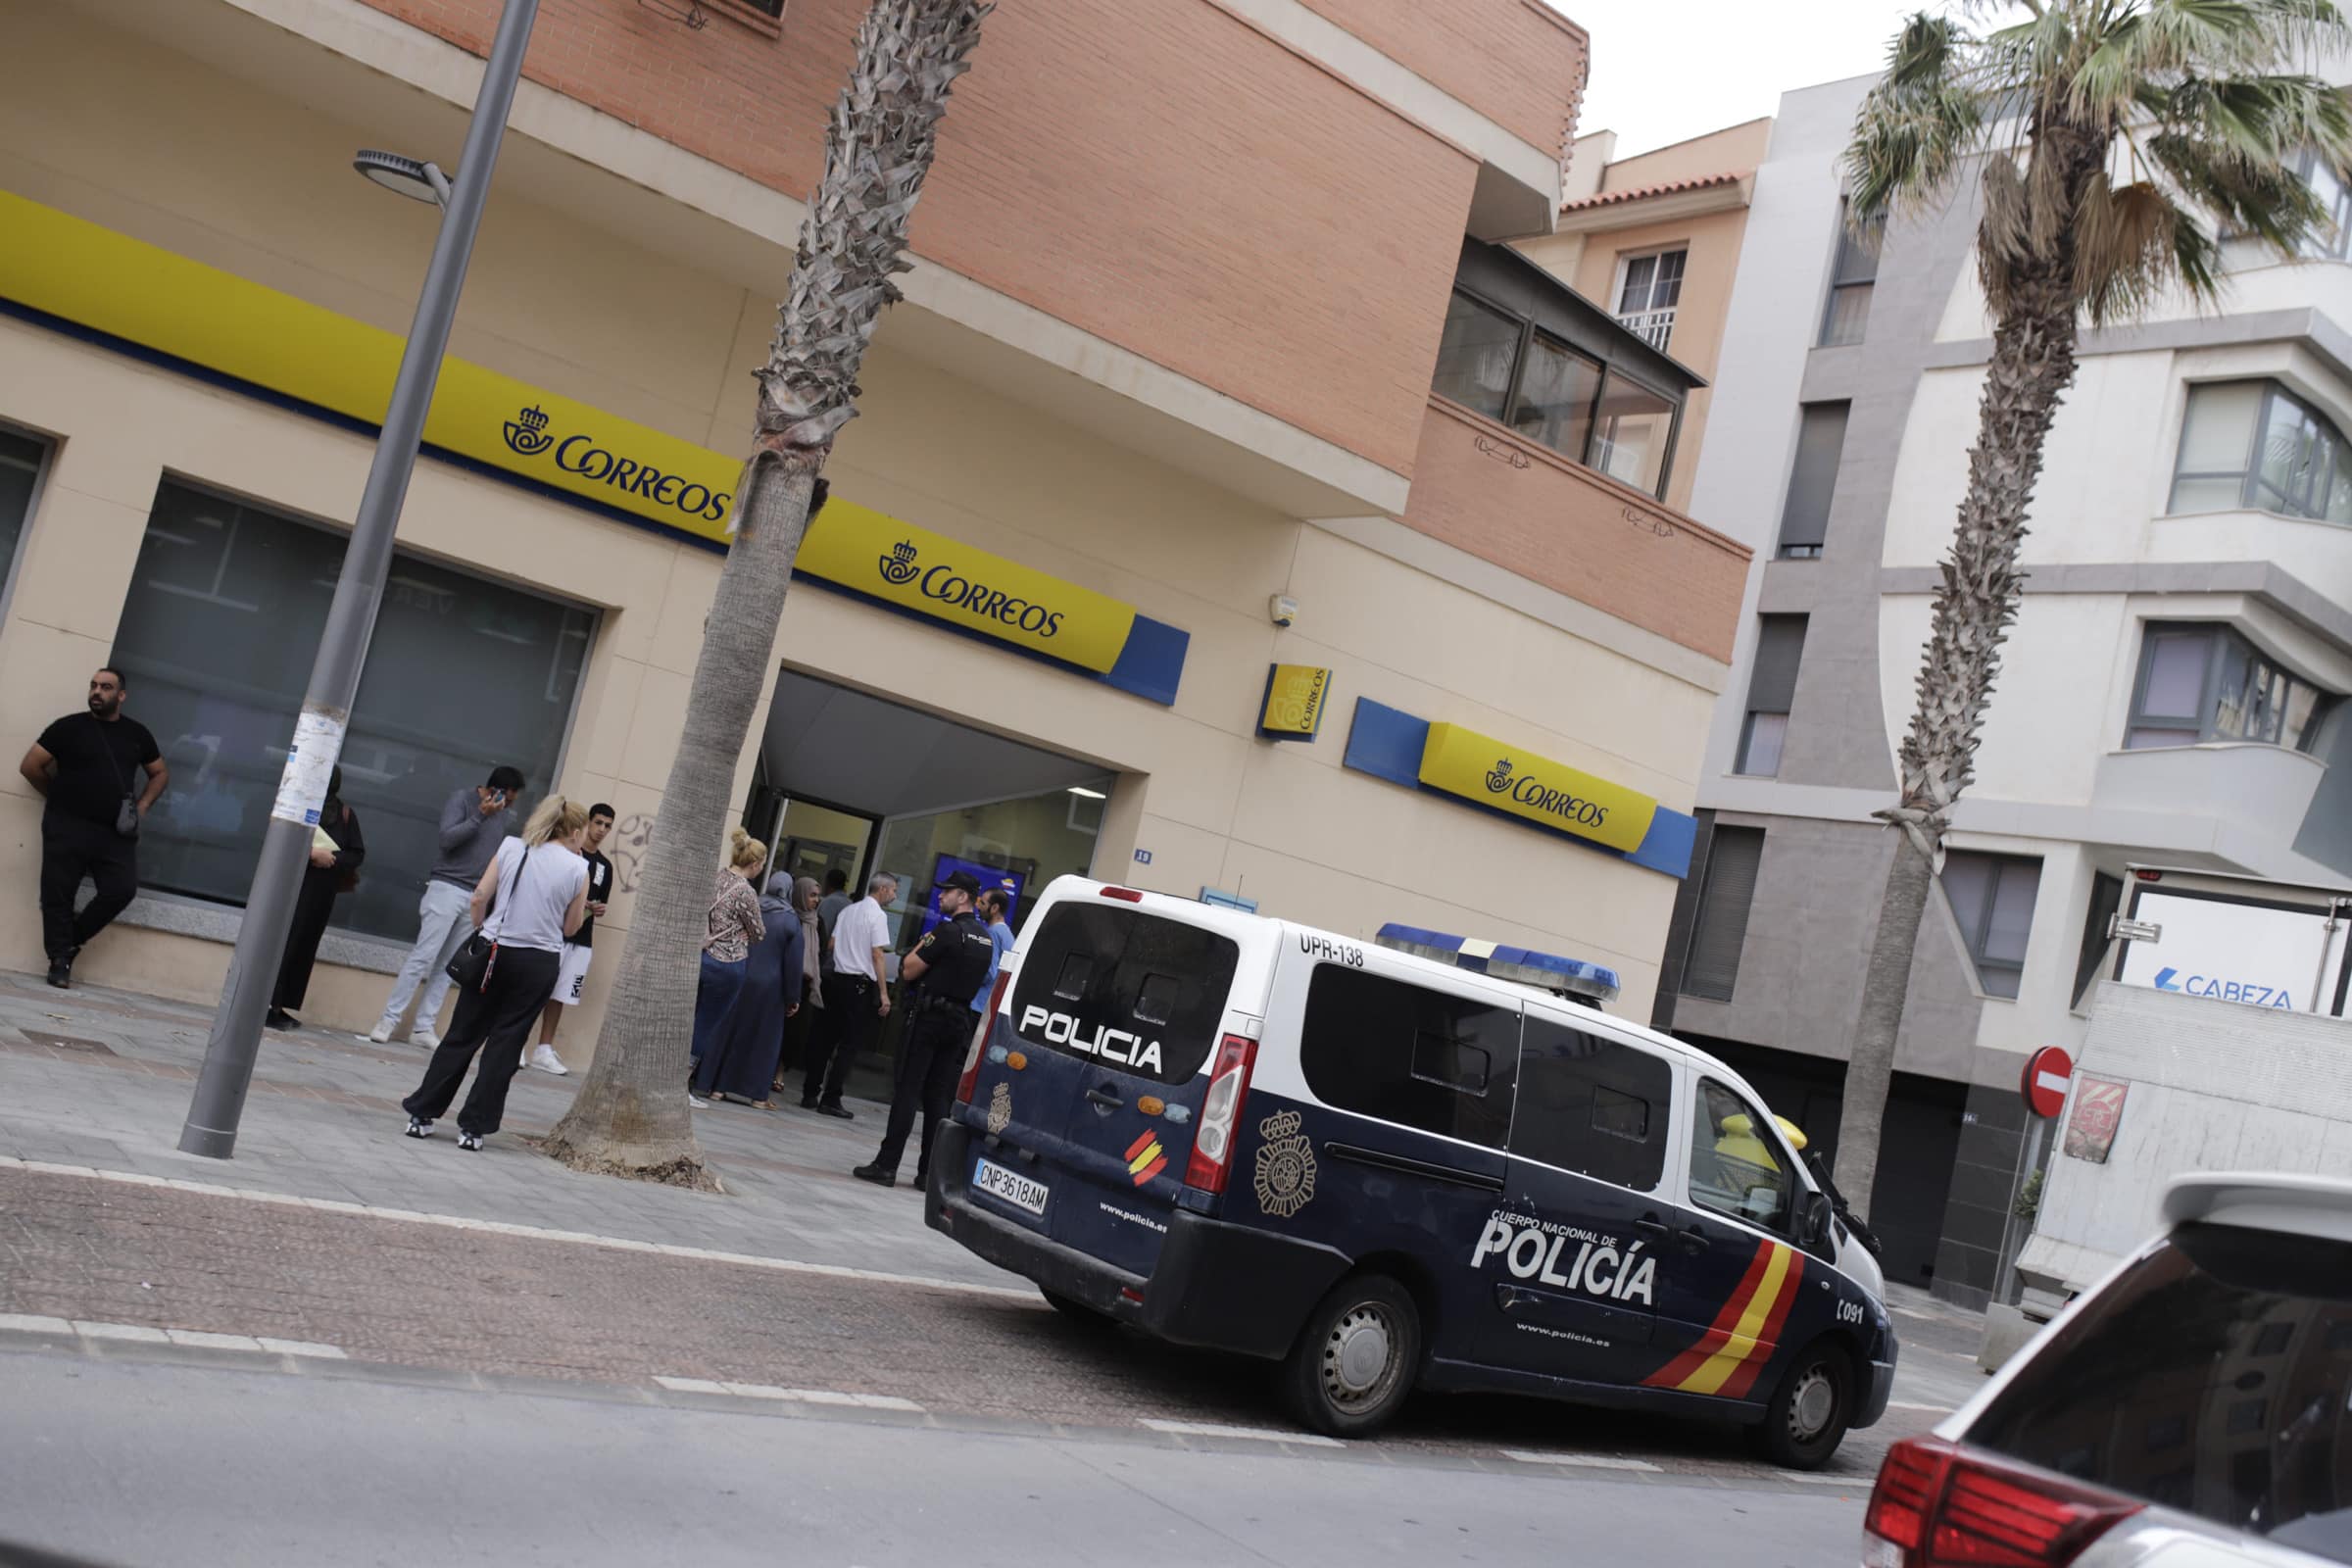 Un voto por 150 euros, una vivienda VPO o un empleo: así opera la red mafiosa en Melilla